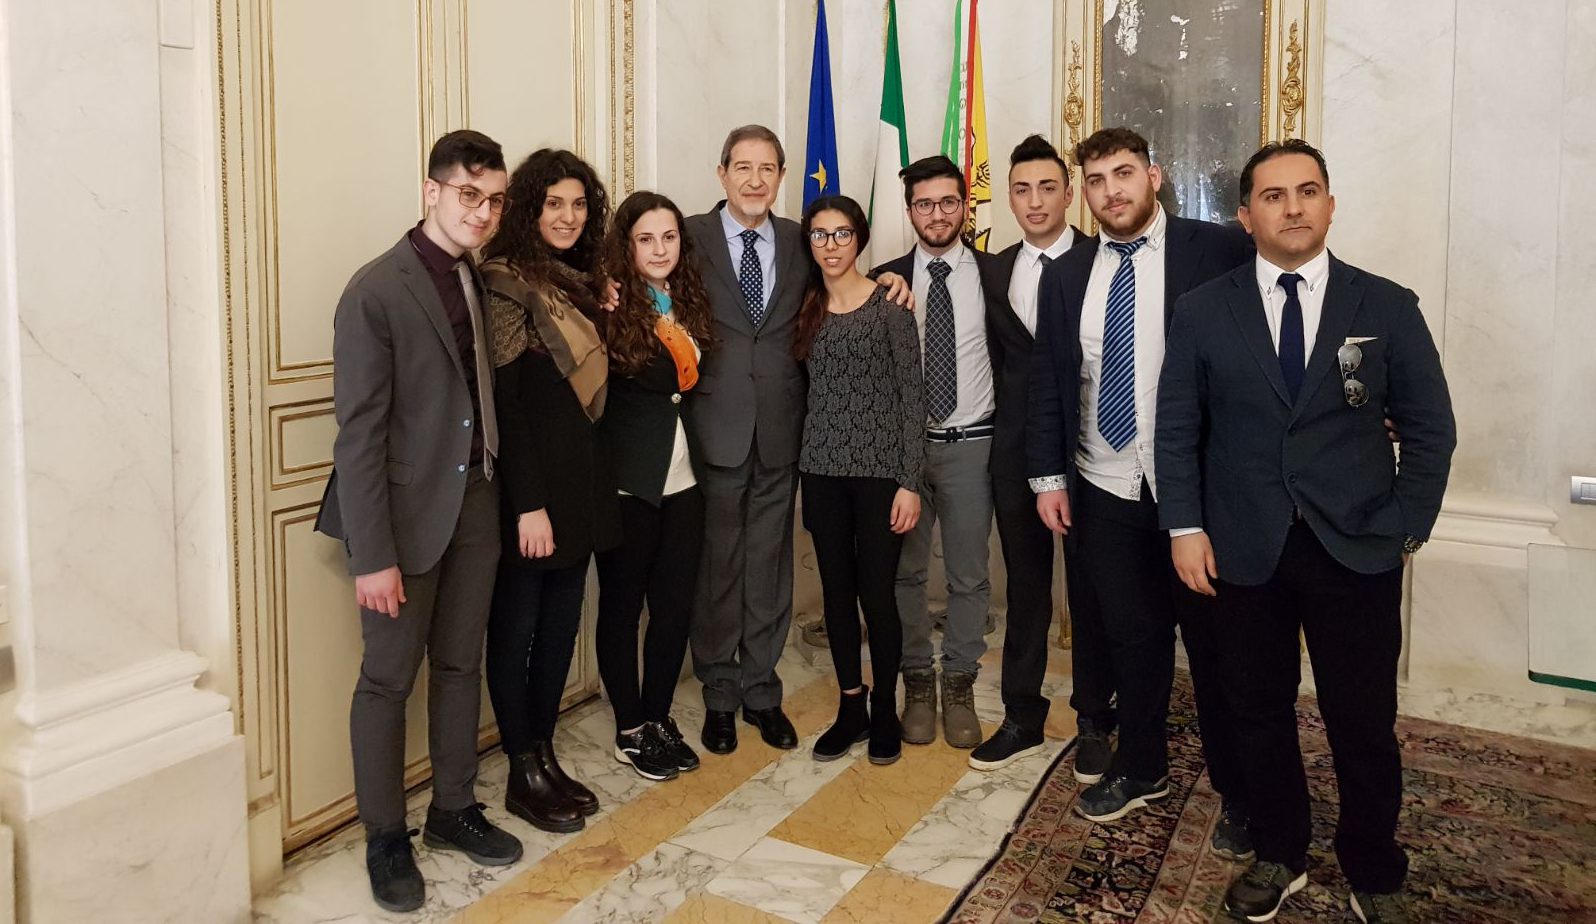  Studenti del “Fabio Besta” in visita all’Ars: incontro col presidente Musumeci